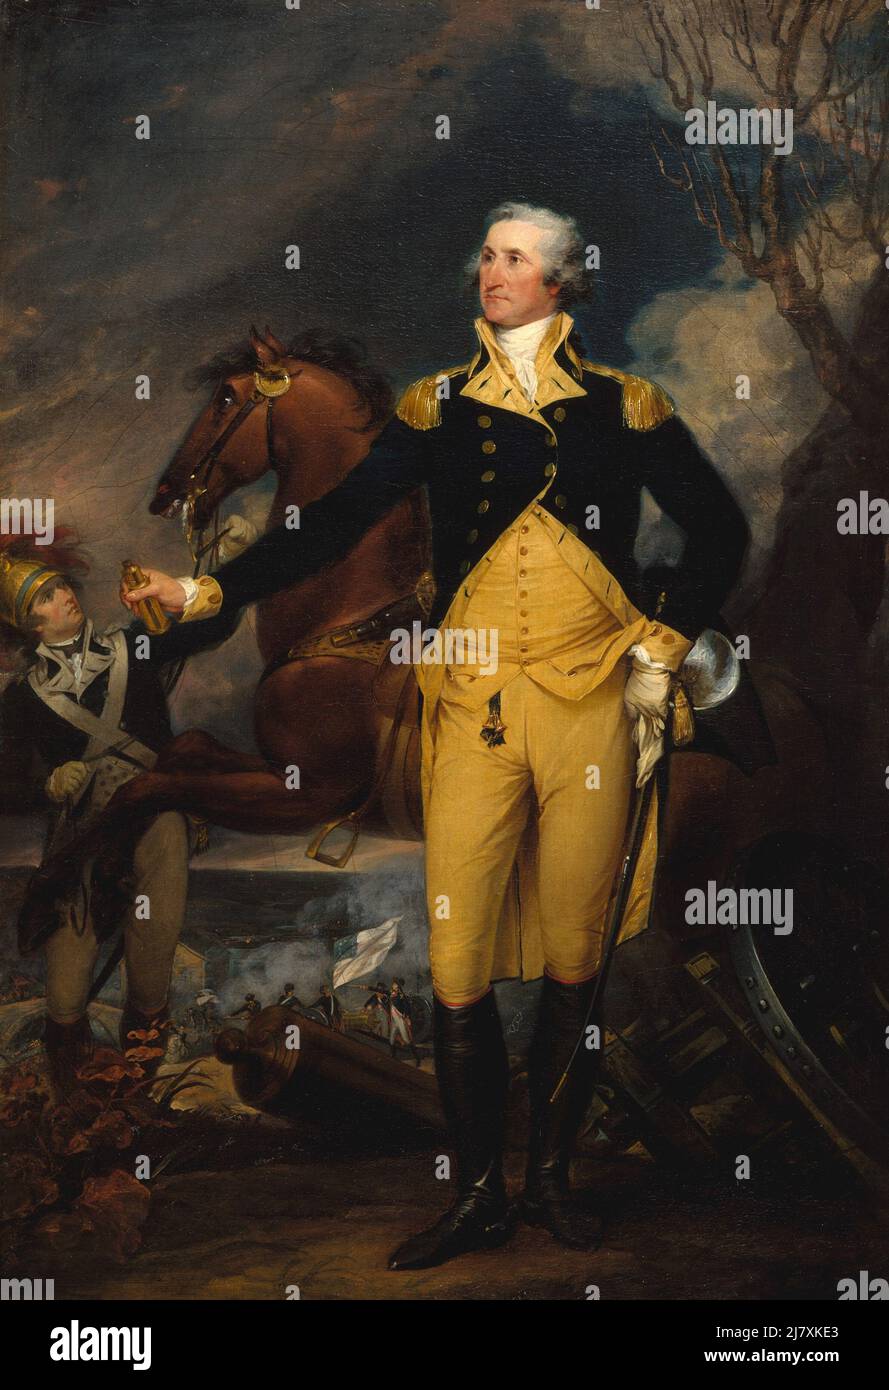 George Washington before the Battle of Trenton Stock Photo